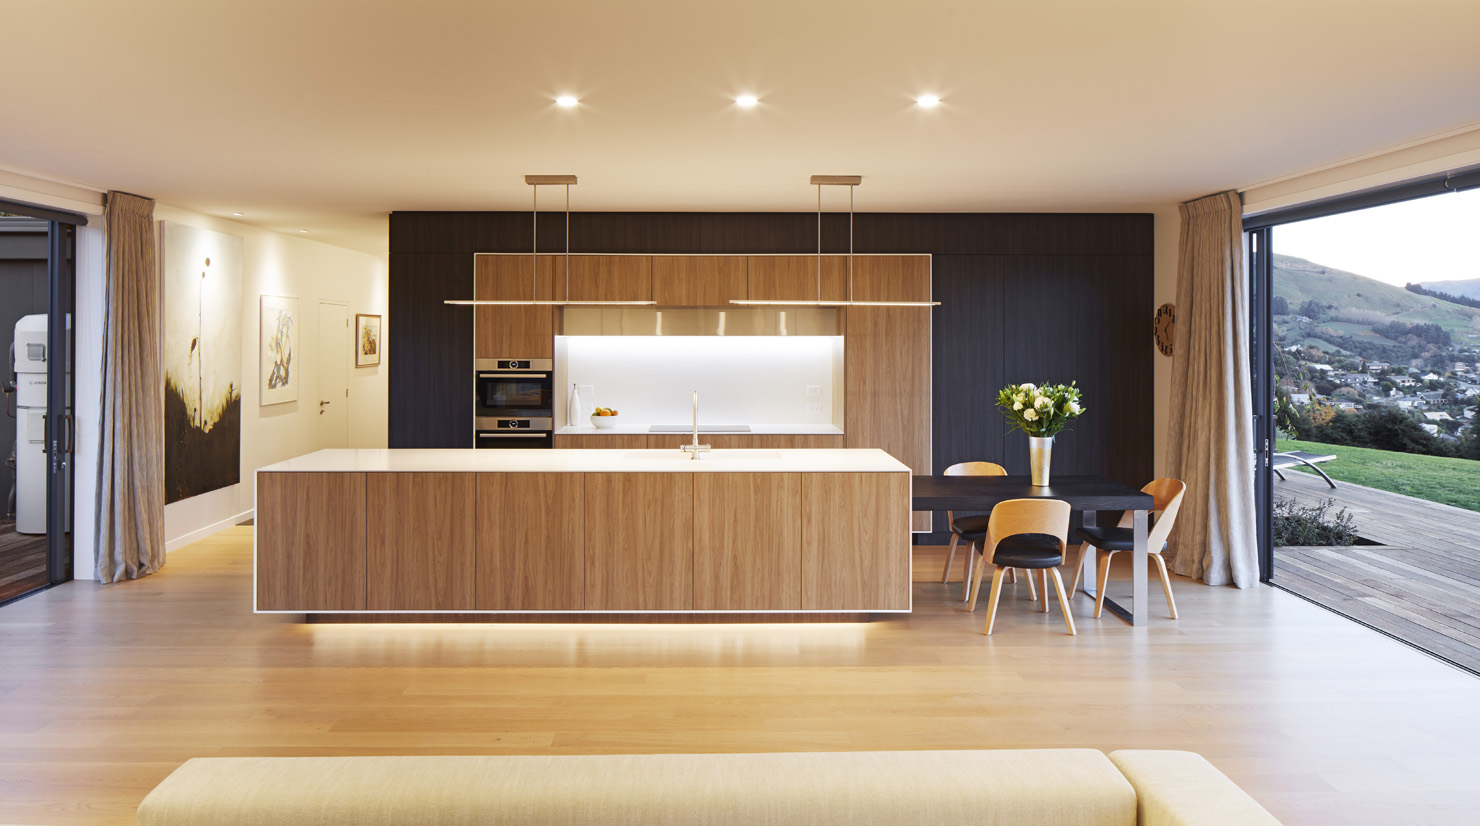 ingrid geldof Multi Award Winning Kitchen interior kitchen and bathroom designer